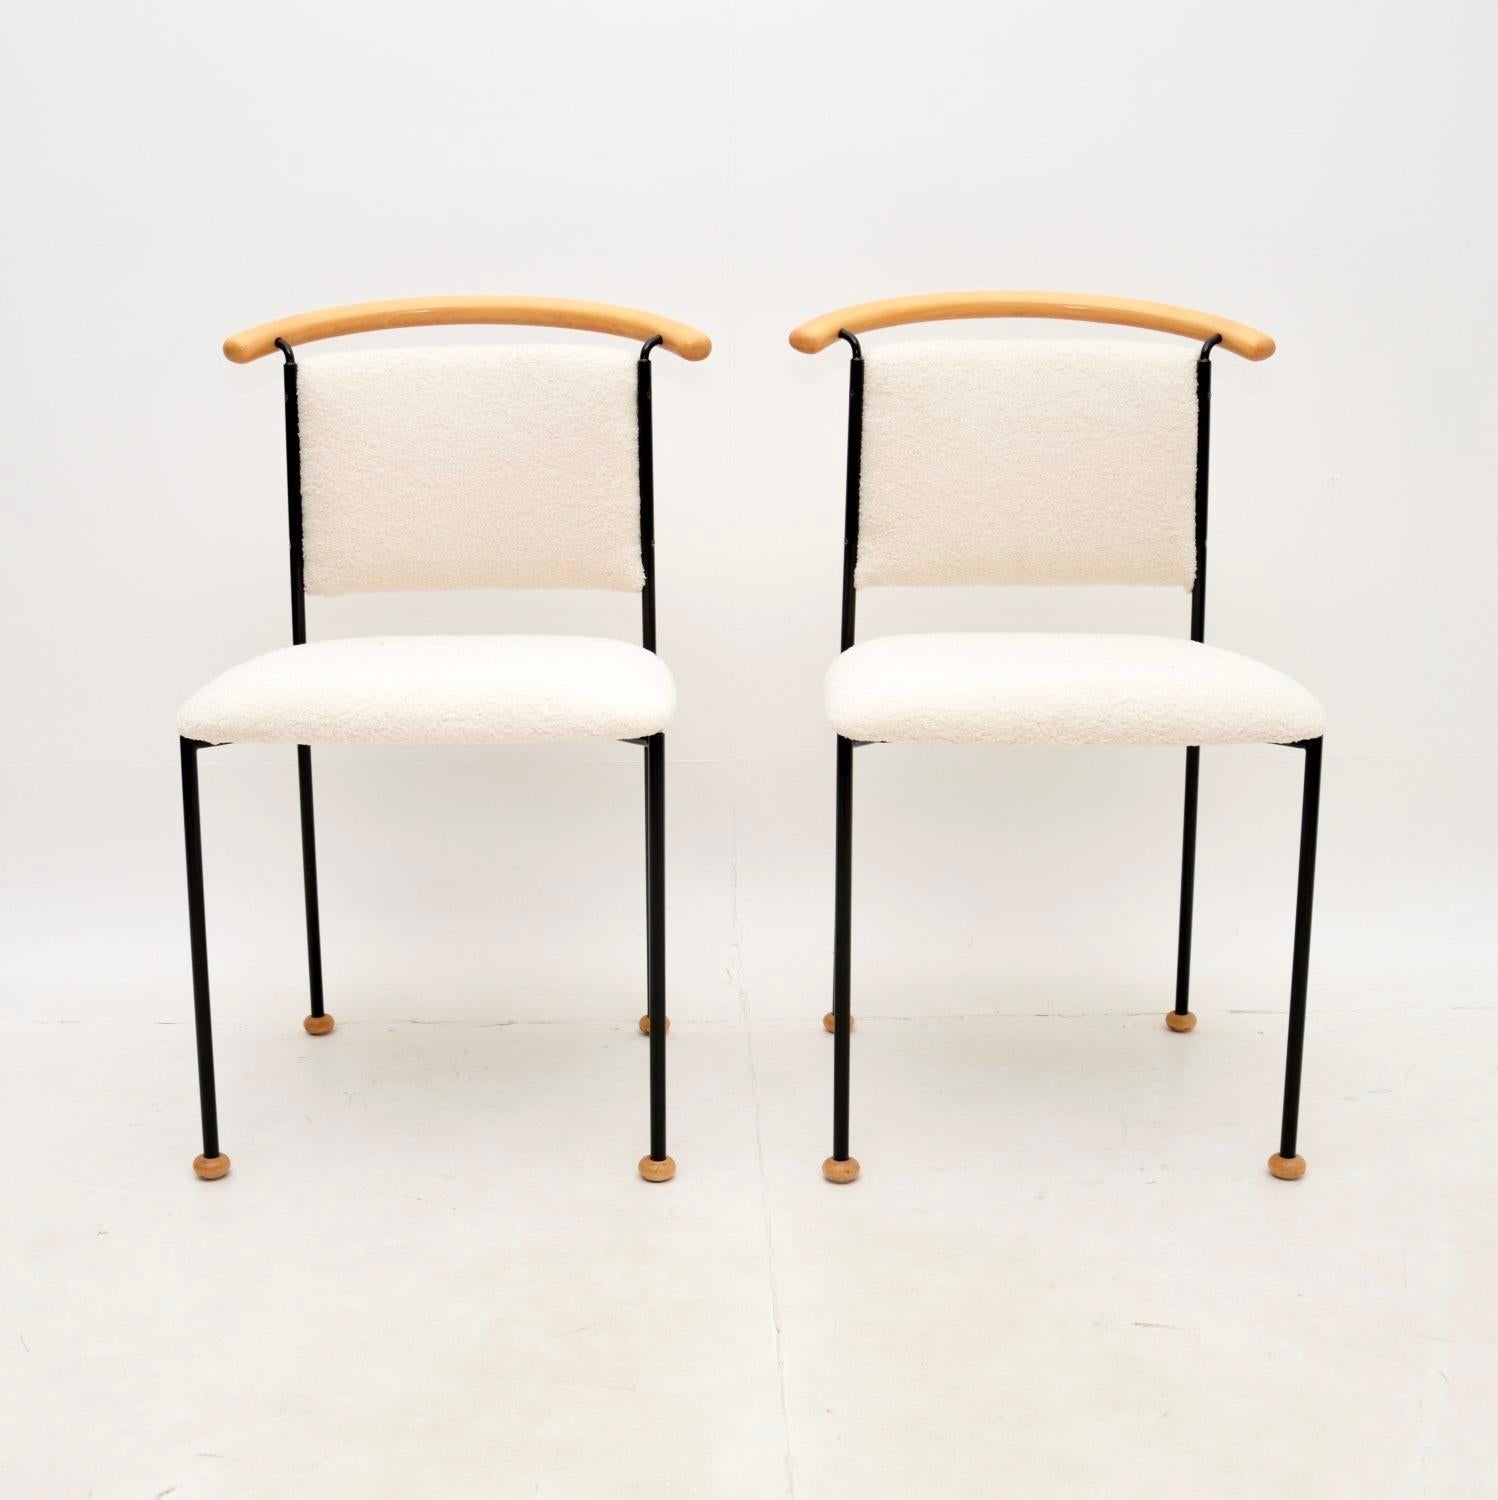 Une paire de chaises d'appoint italiennes vintage très intéressantes et élégantes. Ils ont été fabriqués en Italie et datent des années 1970-1980.

Ils sont d'une superbe qualité, avec un design excentrique et tout à fait inhabituel. Les cadres en